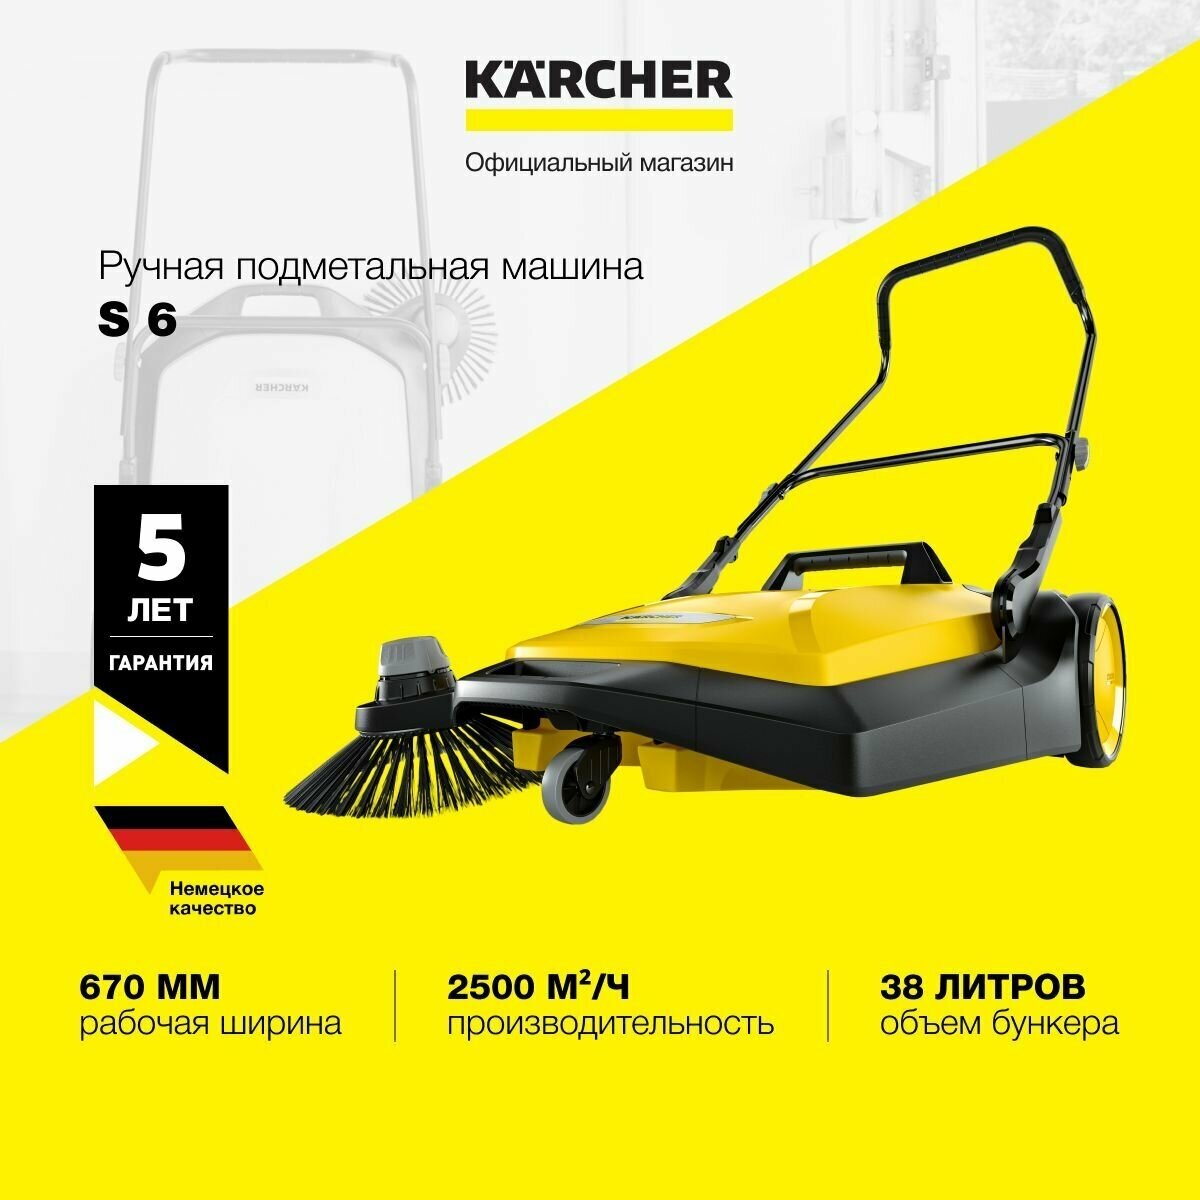 Ручная подметальная машина Karcher S 6